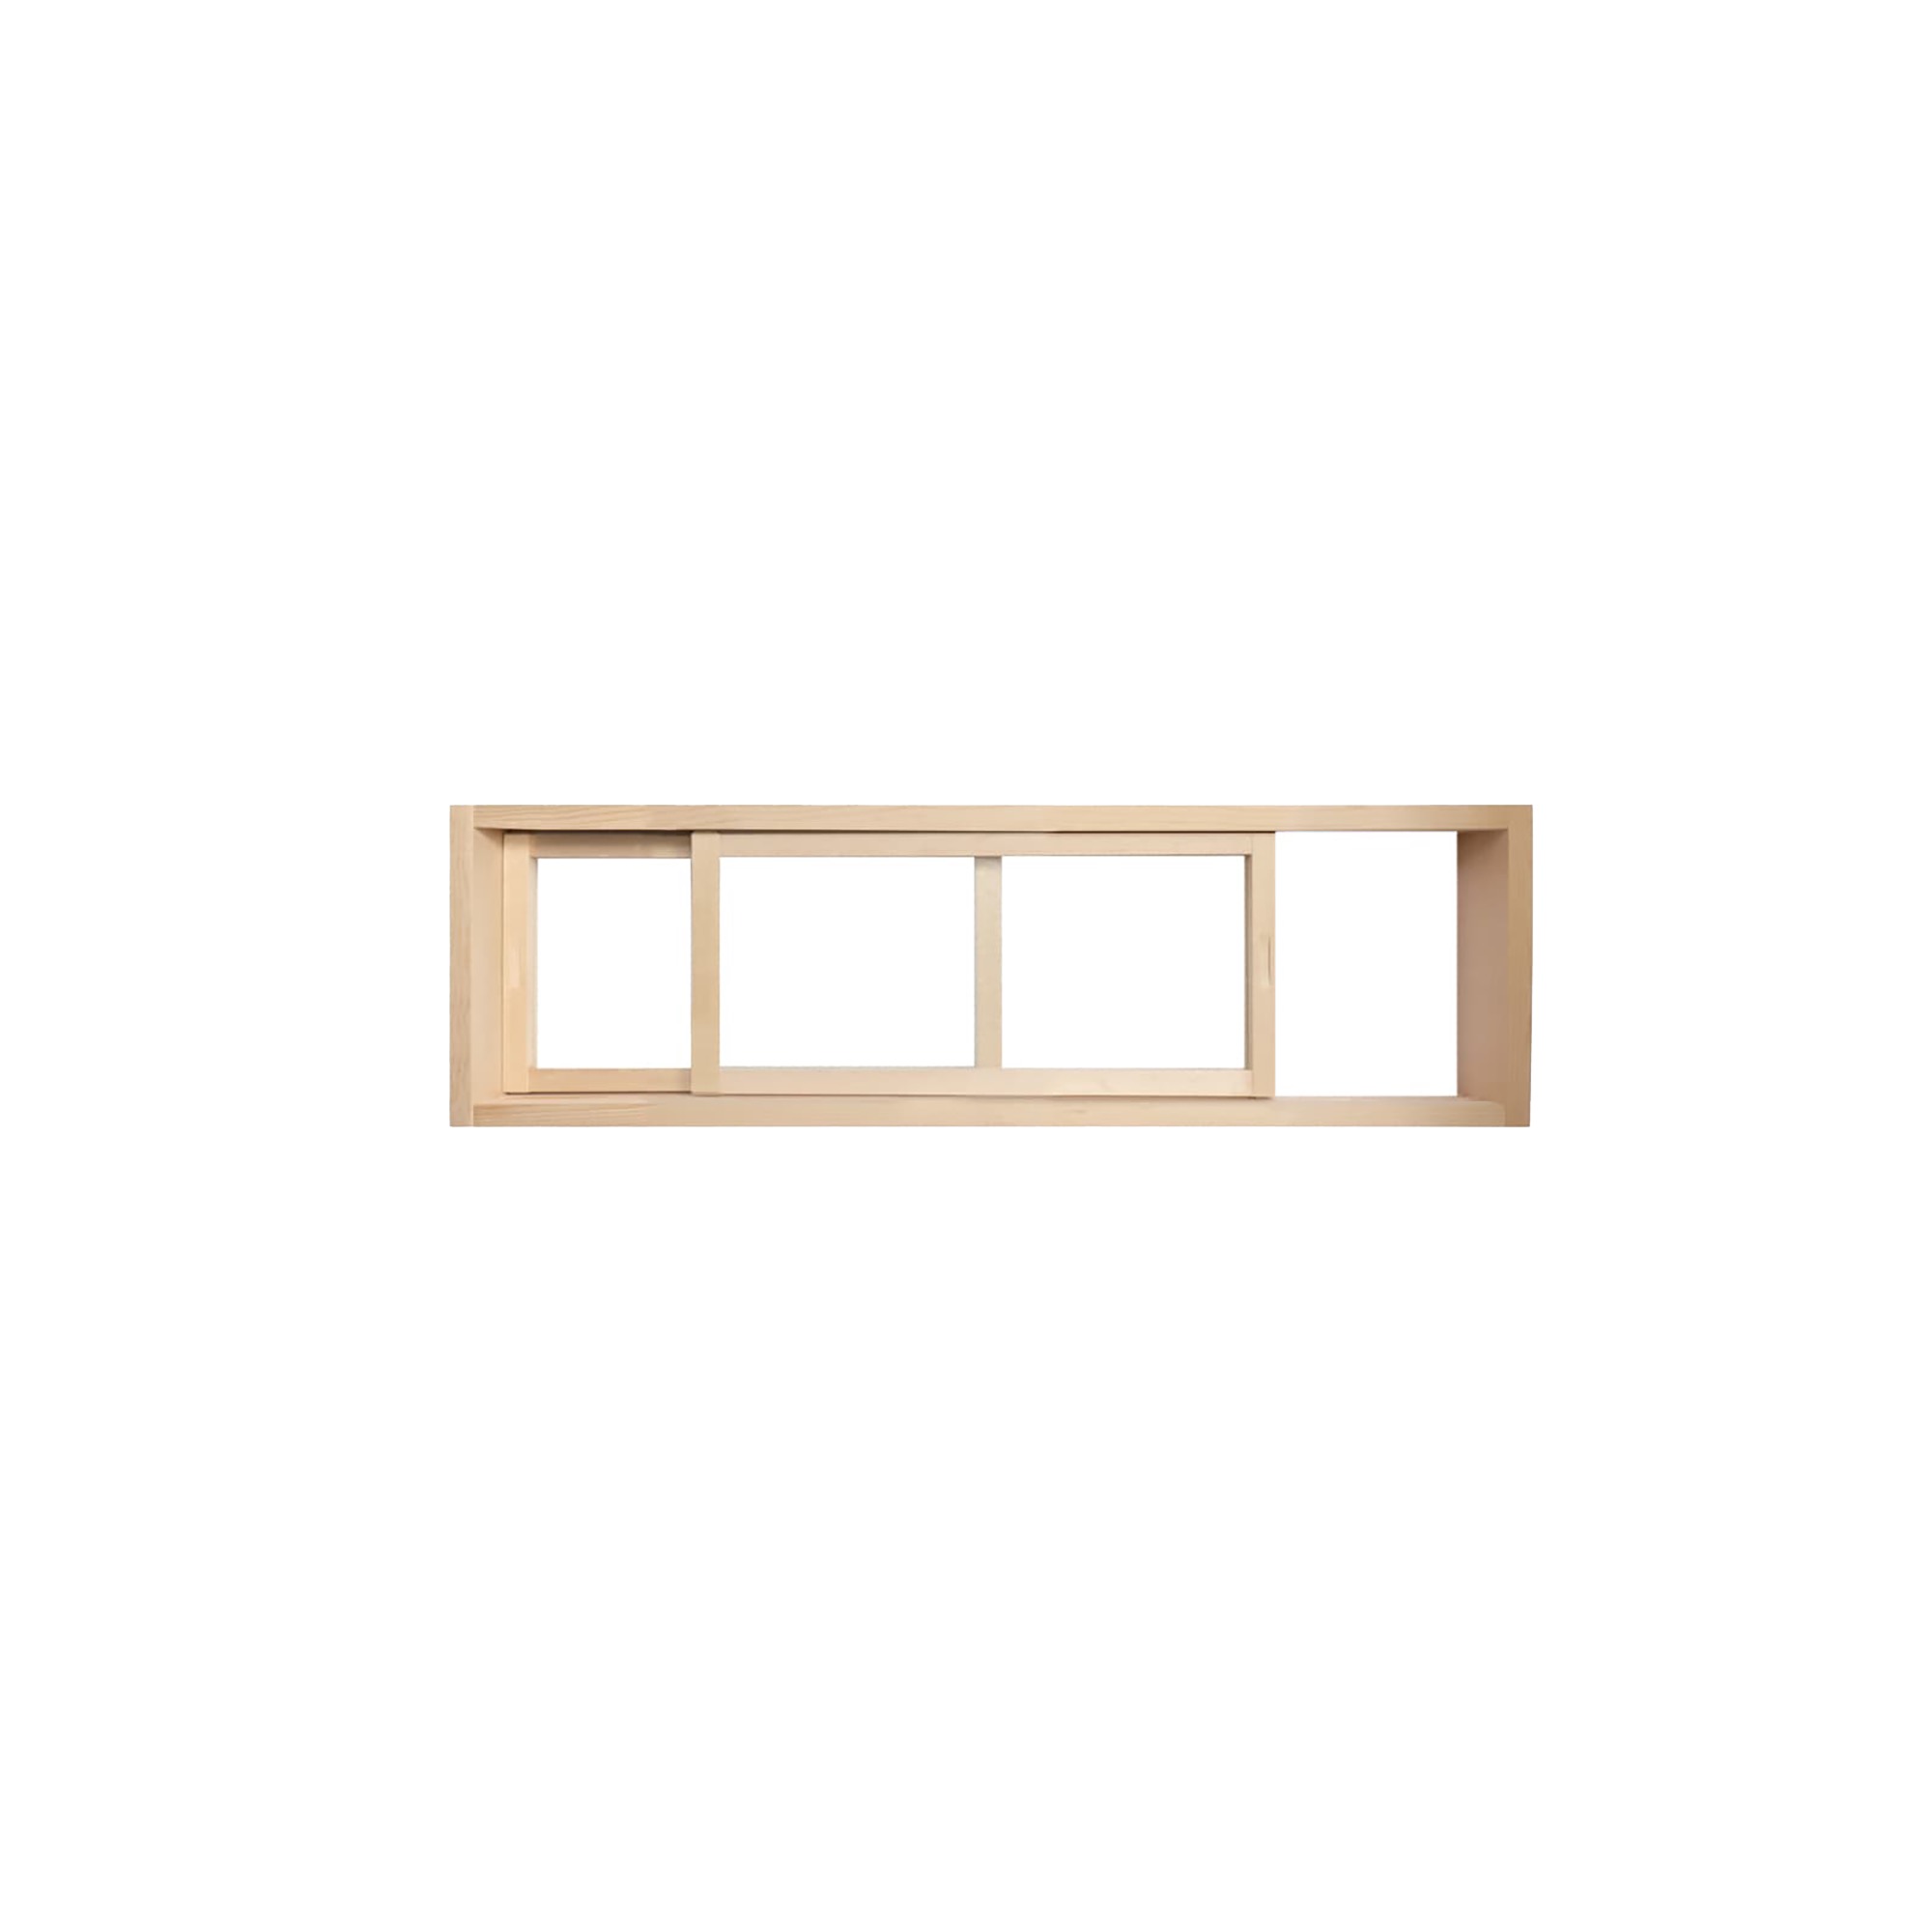 木製室内窓 横長引き違いタイプ サイズオーダー DW-DR008-05-G164 引き戸で左右に開閉できます。幅はサイズオーダーが可能